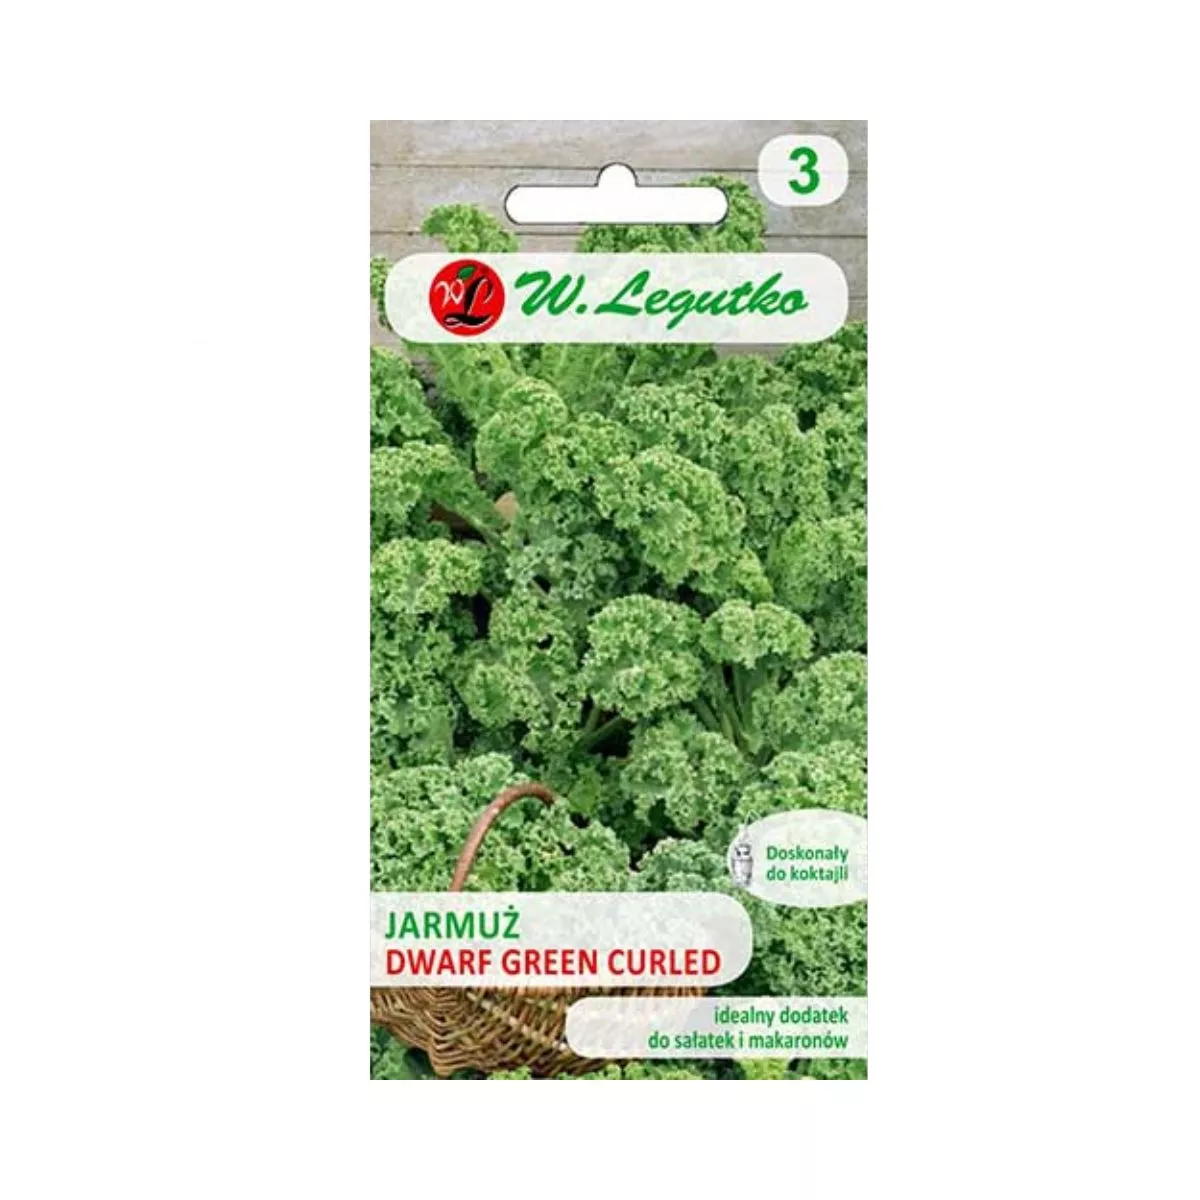 Seminte de varza Kale pitica, 1 gr, LEGUTKO 1